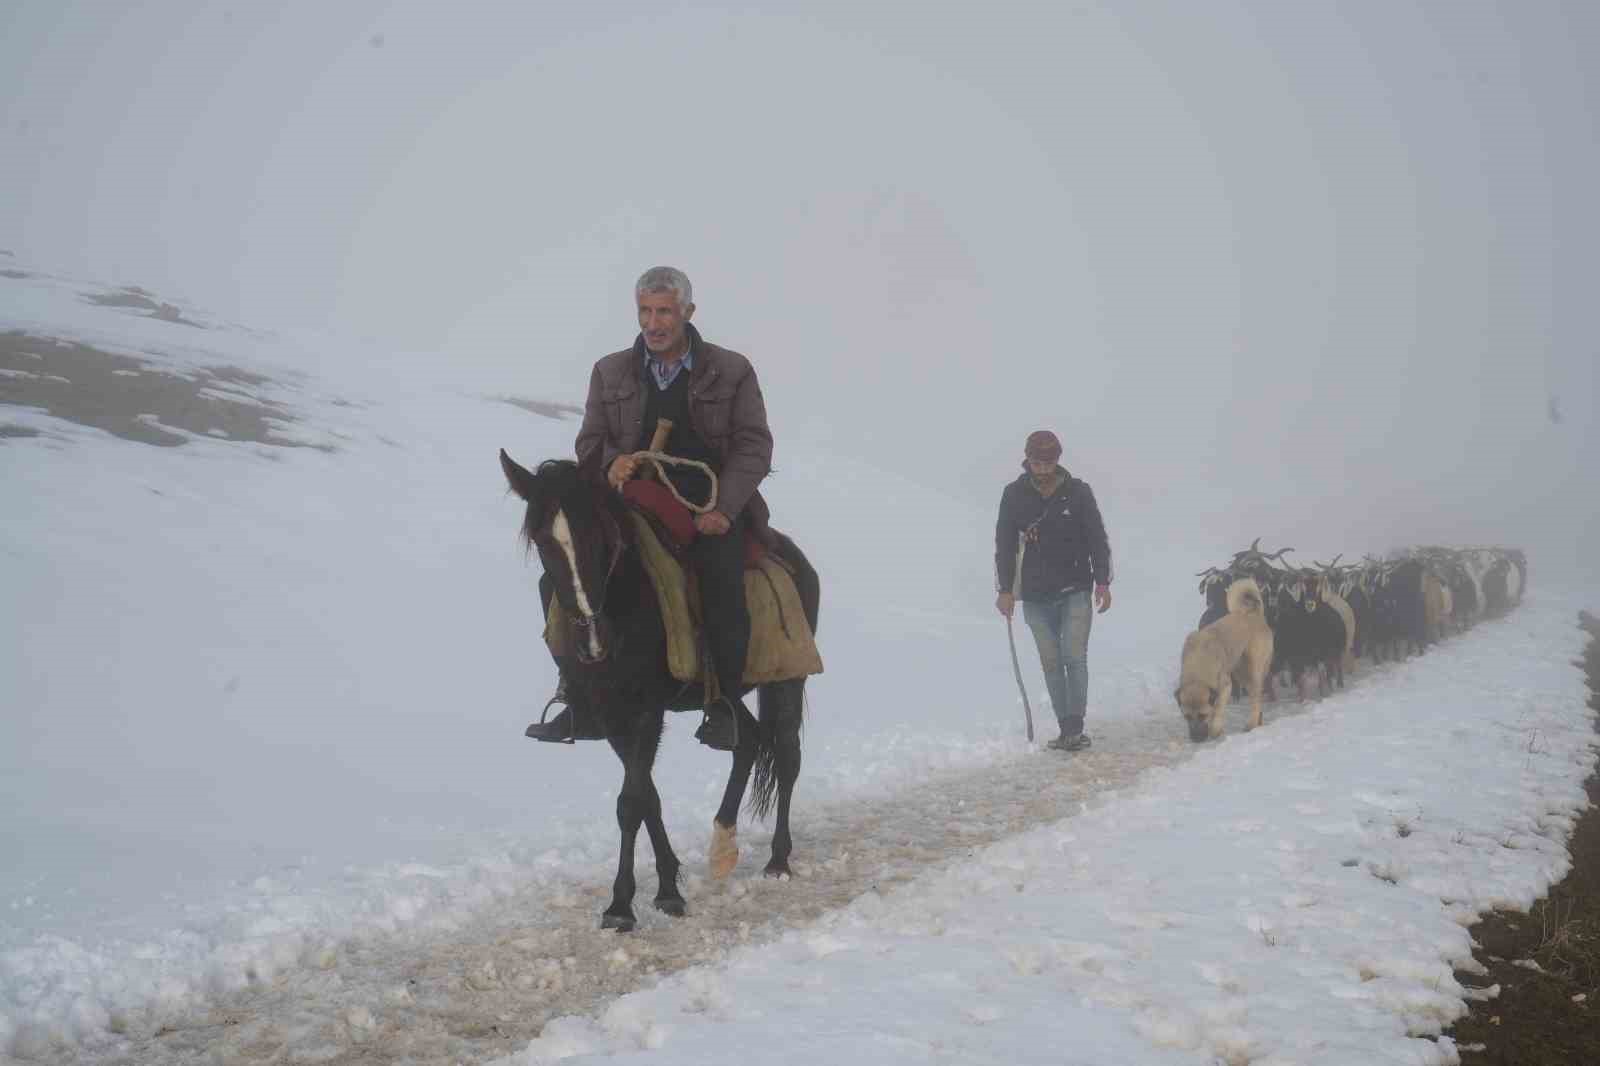 Muş’ta keçi sürüsünün kar üzerinde 4 saatlik zorlu yolculuğu güzel görüntülere sahne oldu